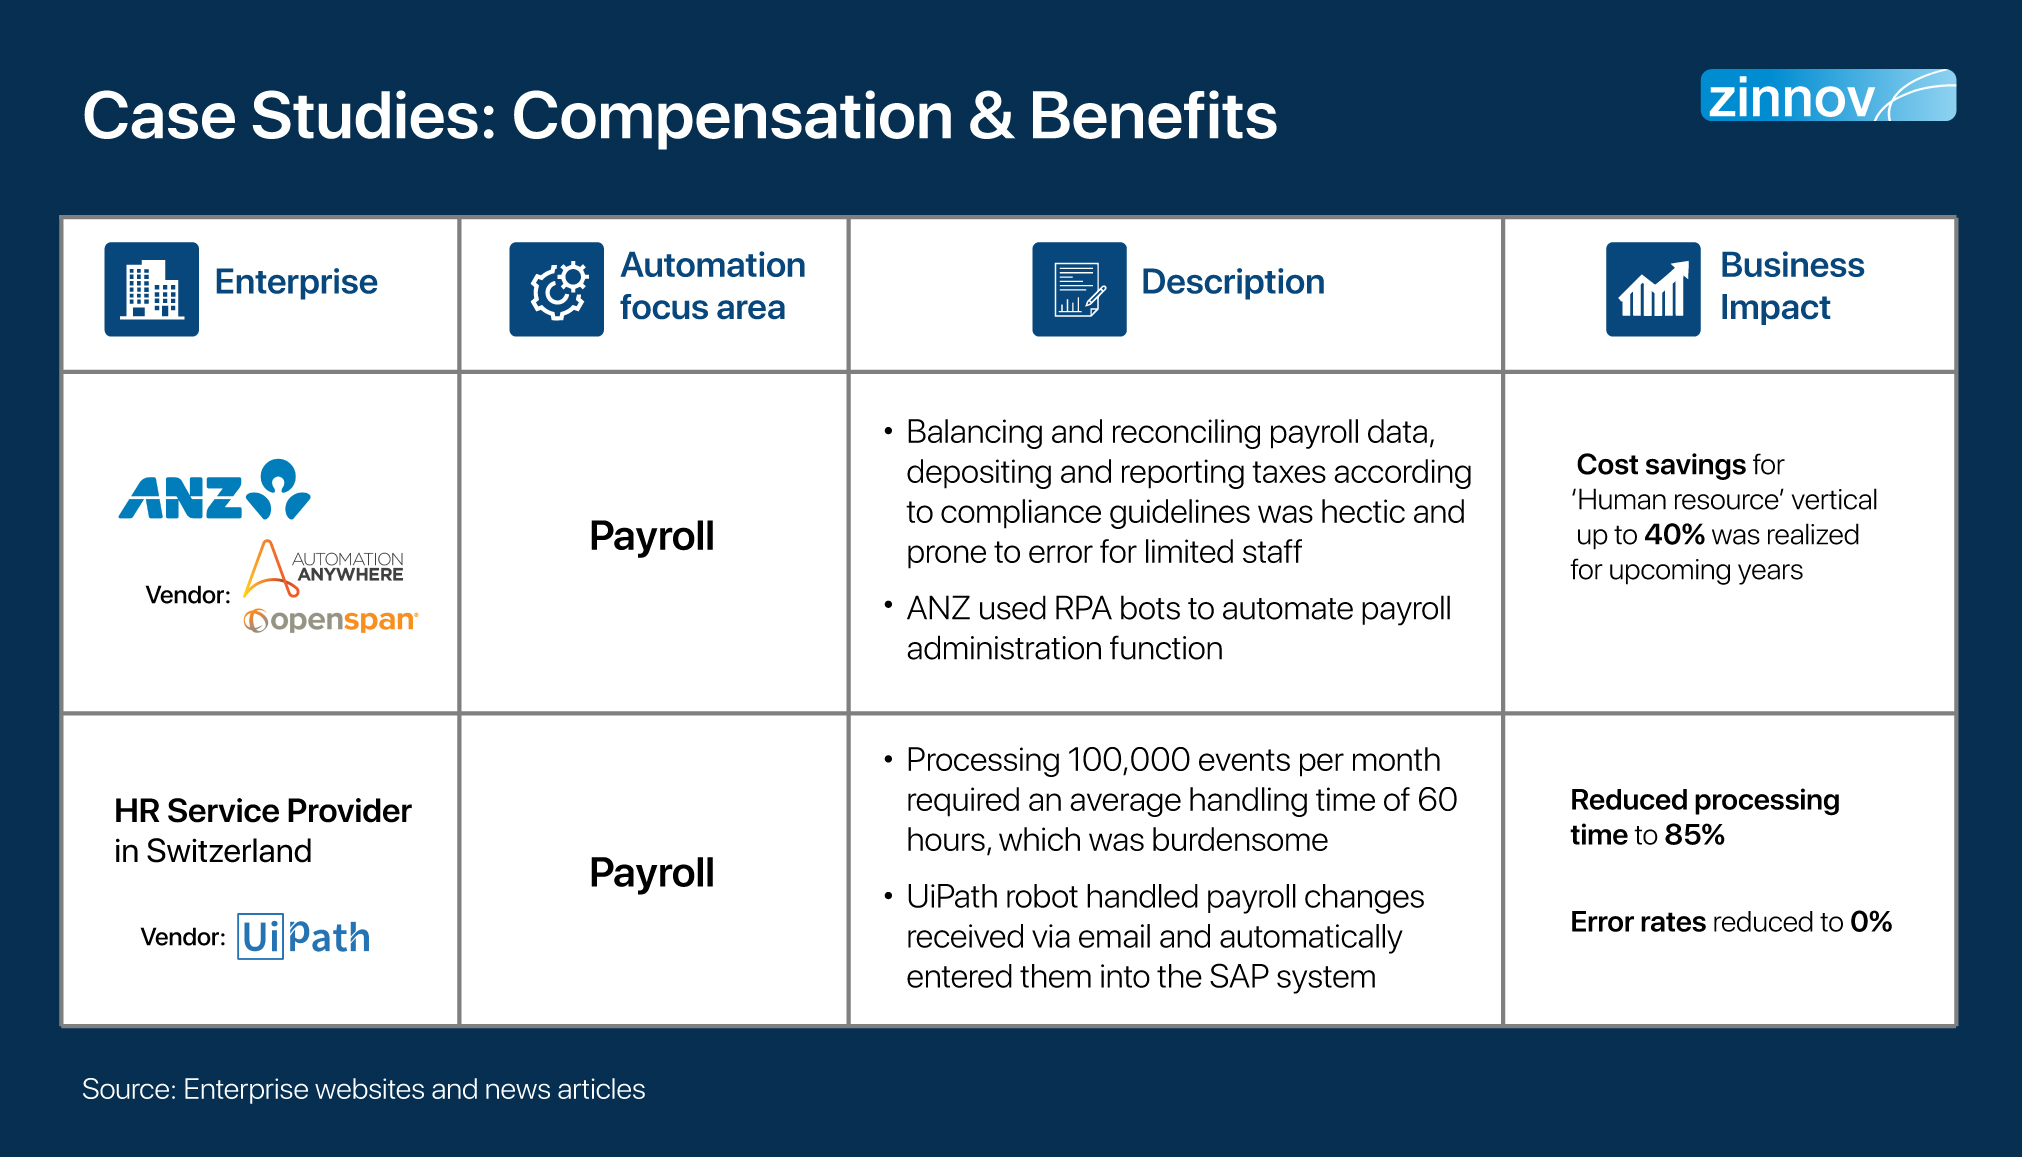 Compensation & Benefits Case Study